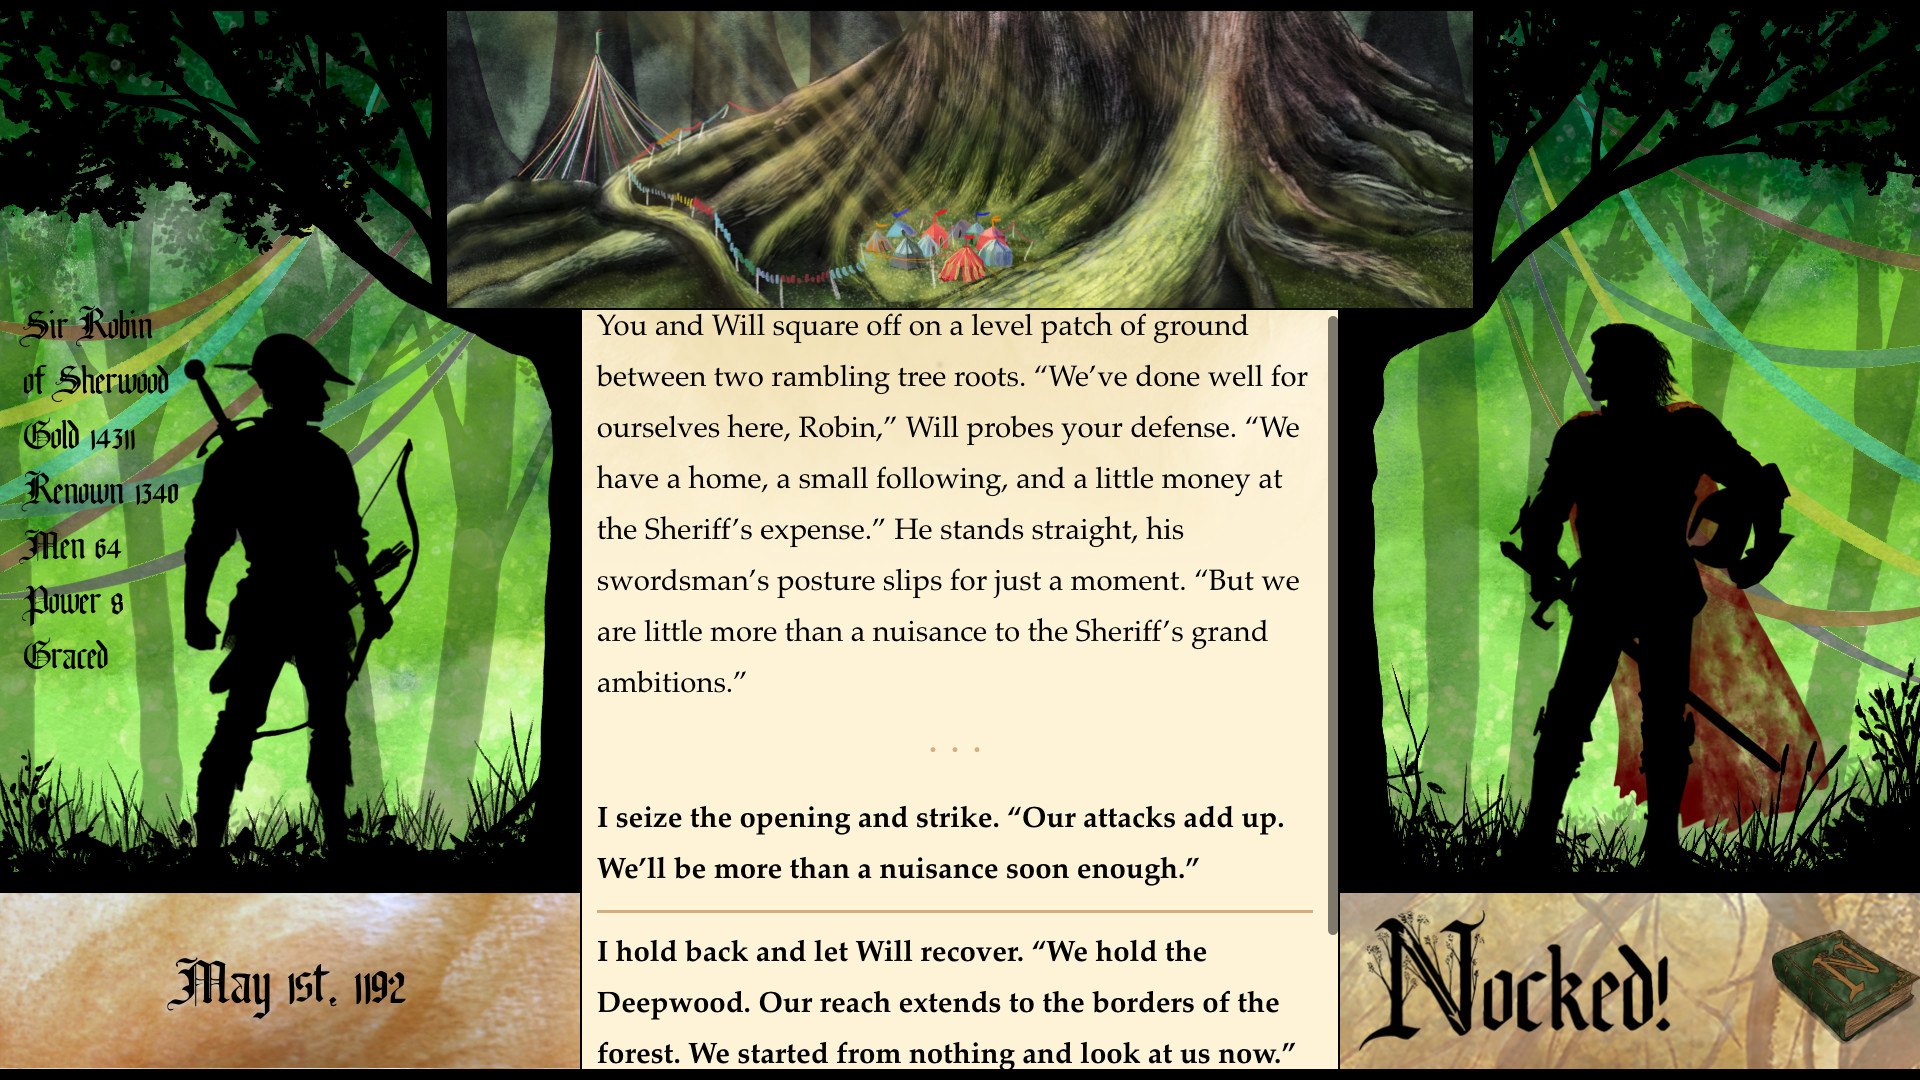 Nocked! True Tales of Robin Hood Steam CD Key, $2.88